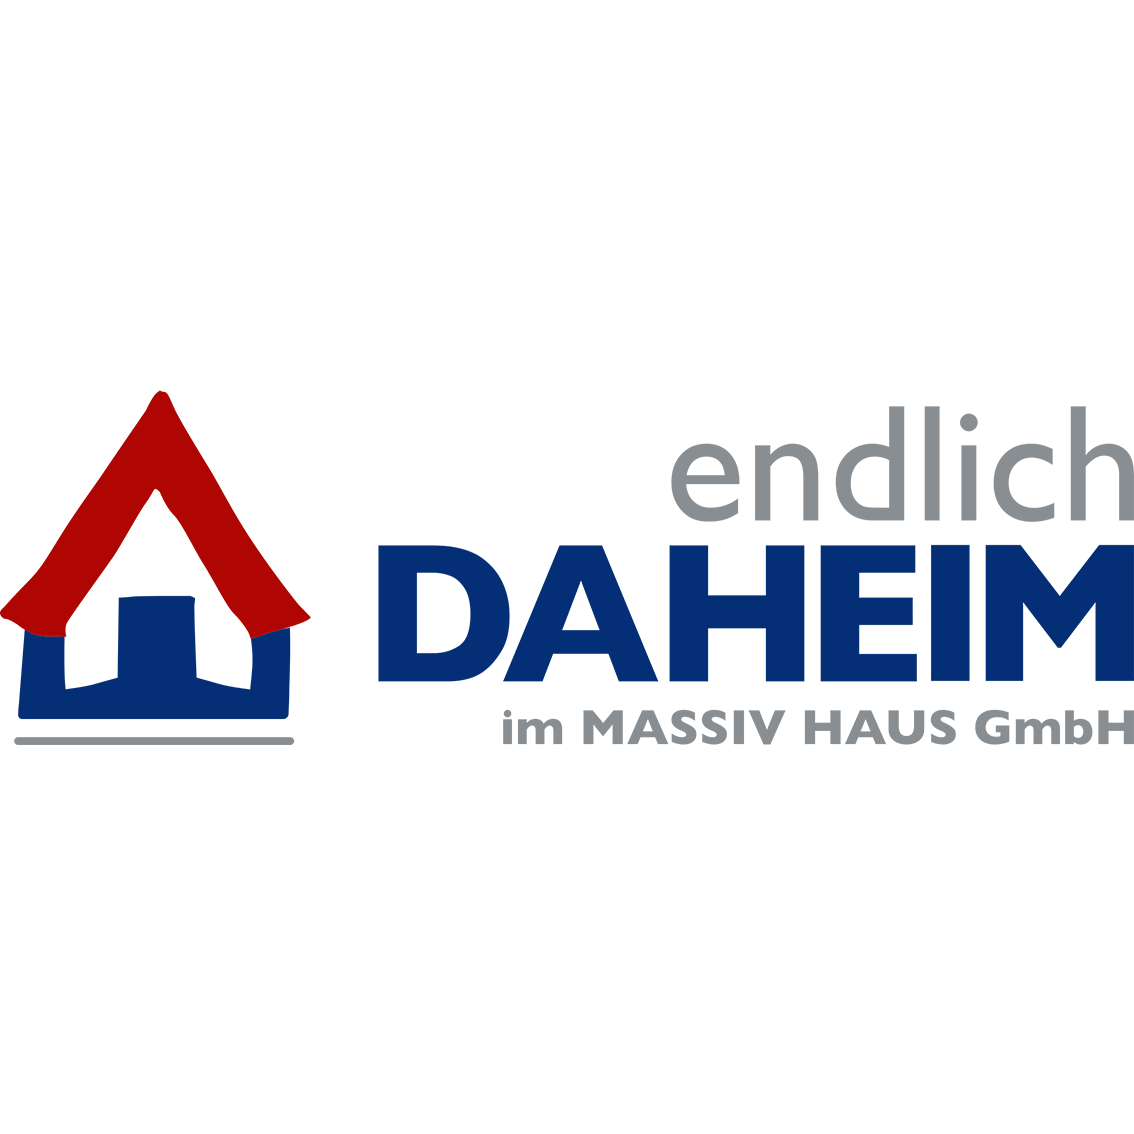 EndlichDaheim Massivhaus GmbH Logo